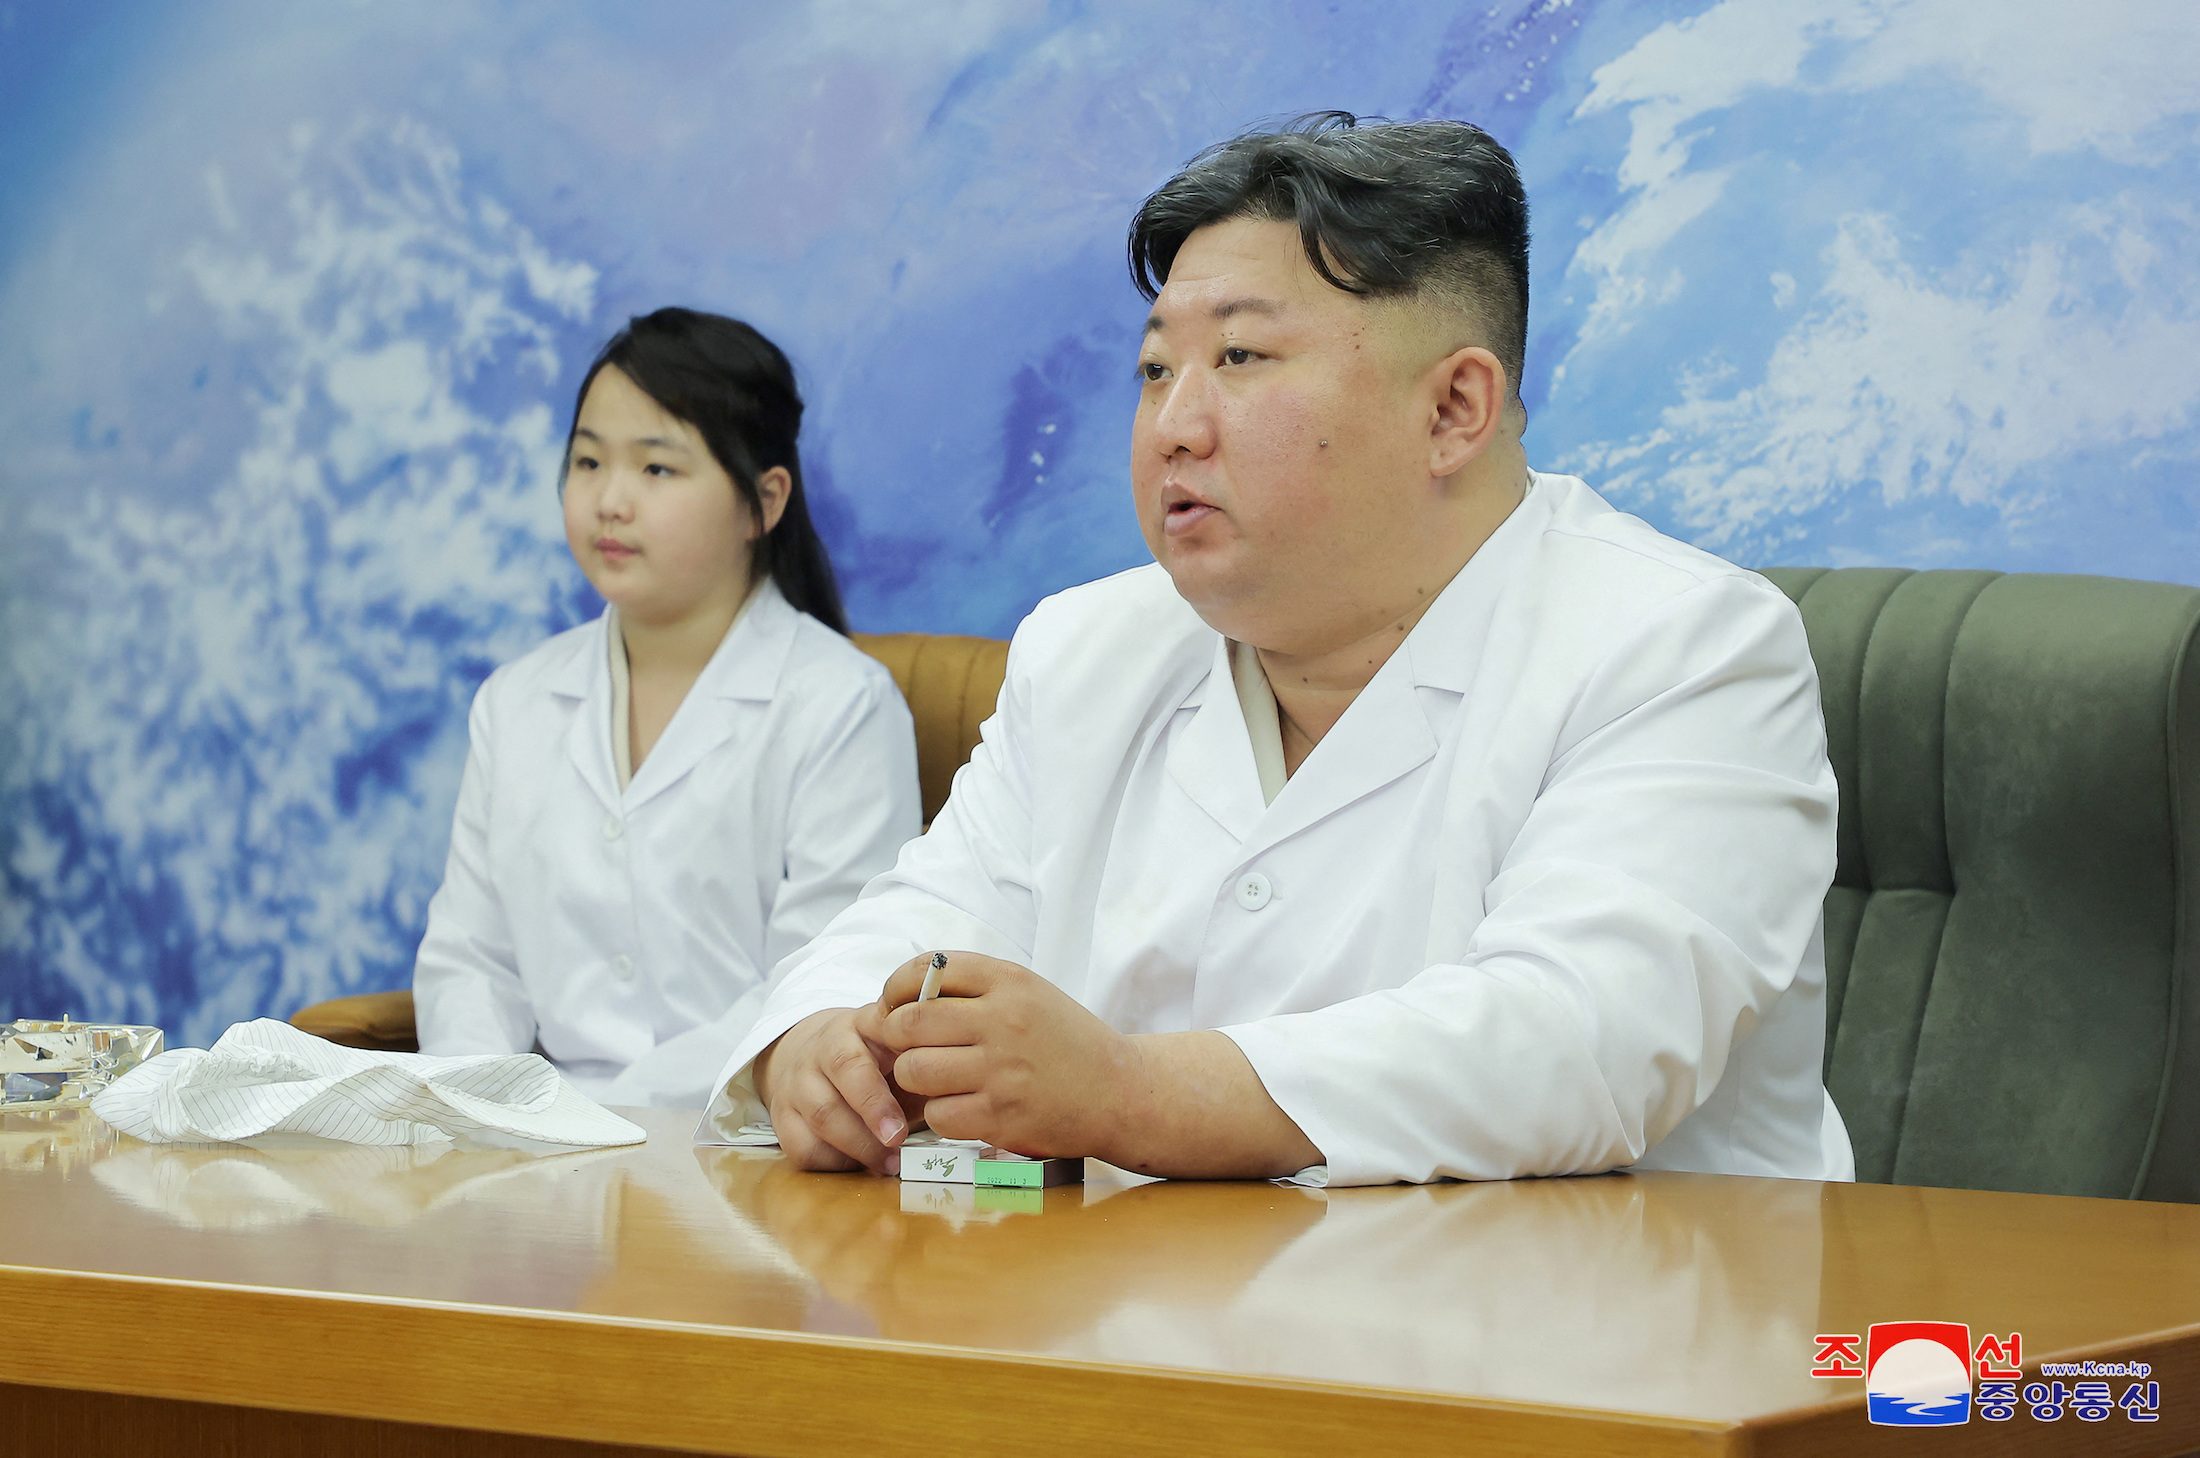 Korea Utara membangun platform peluncuran satelit dengan ‘urgensi baru’ – lapor